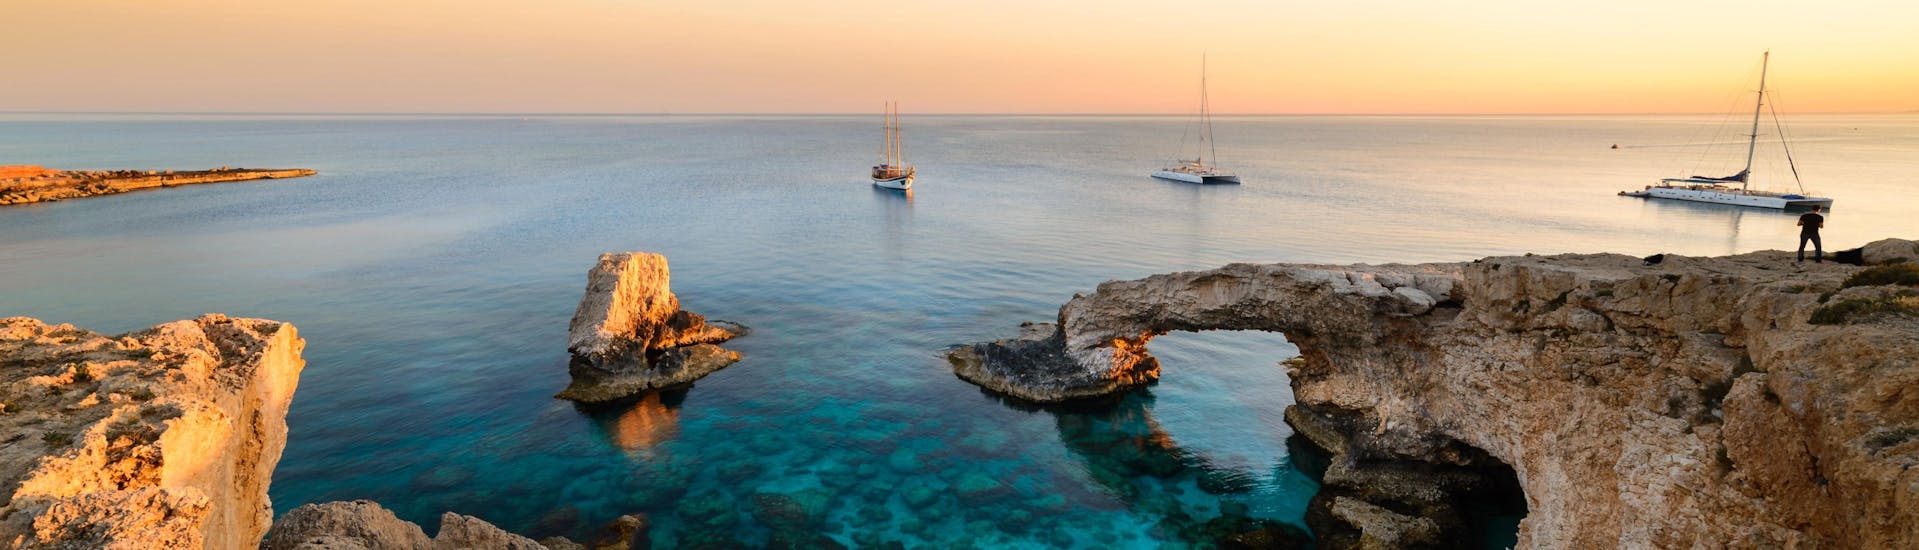 Vista sulla Laguna Blu vicino a Capo Greco, una destinazione straordinaria per le gite in barca a Cipro.